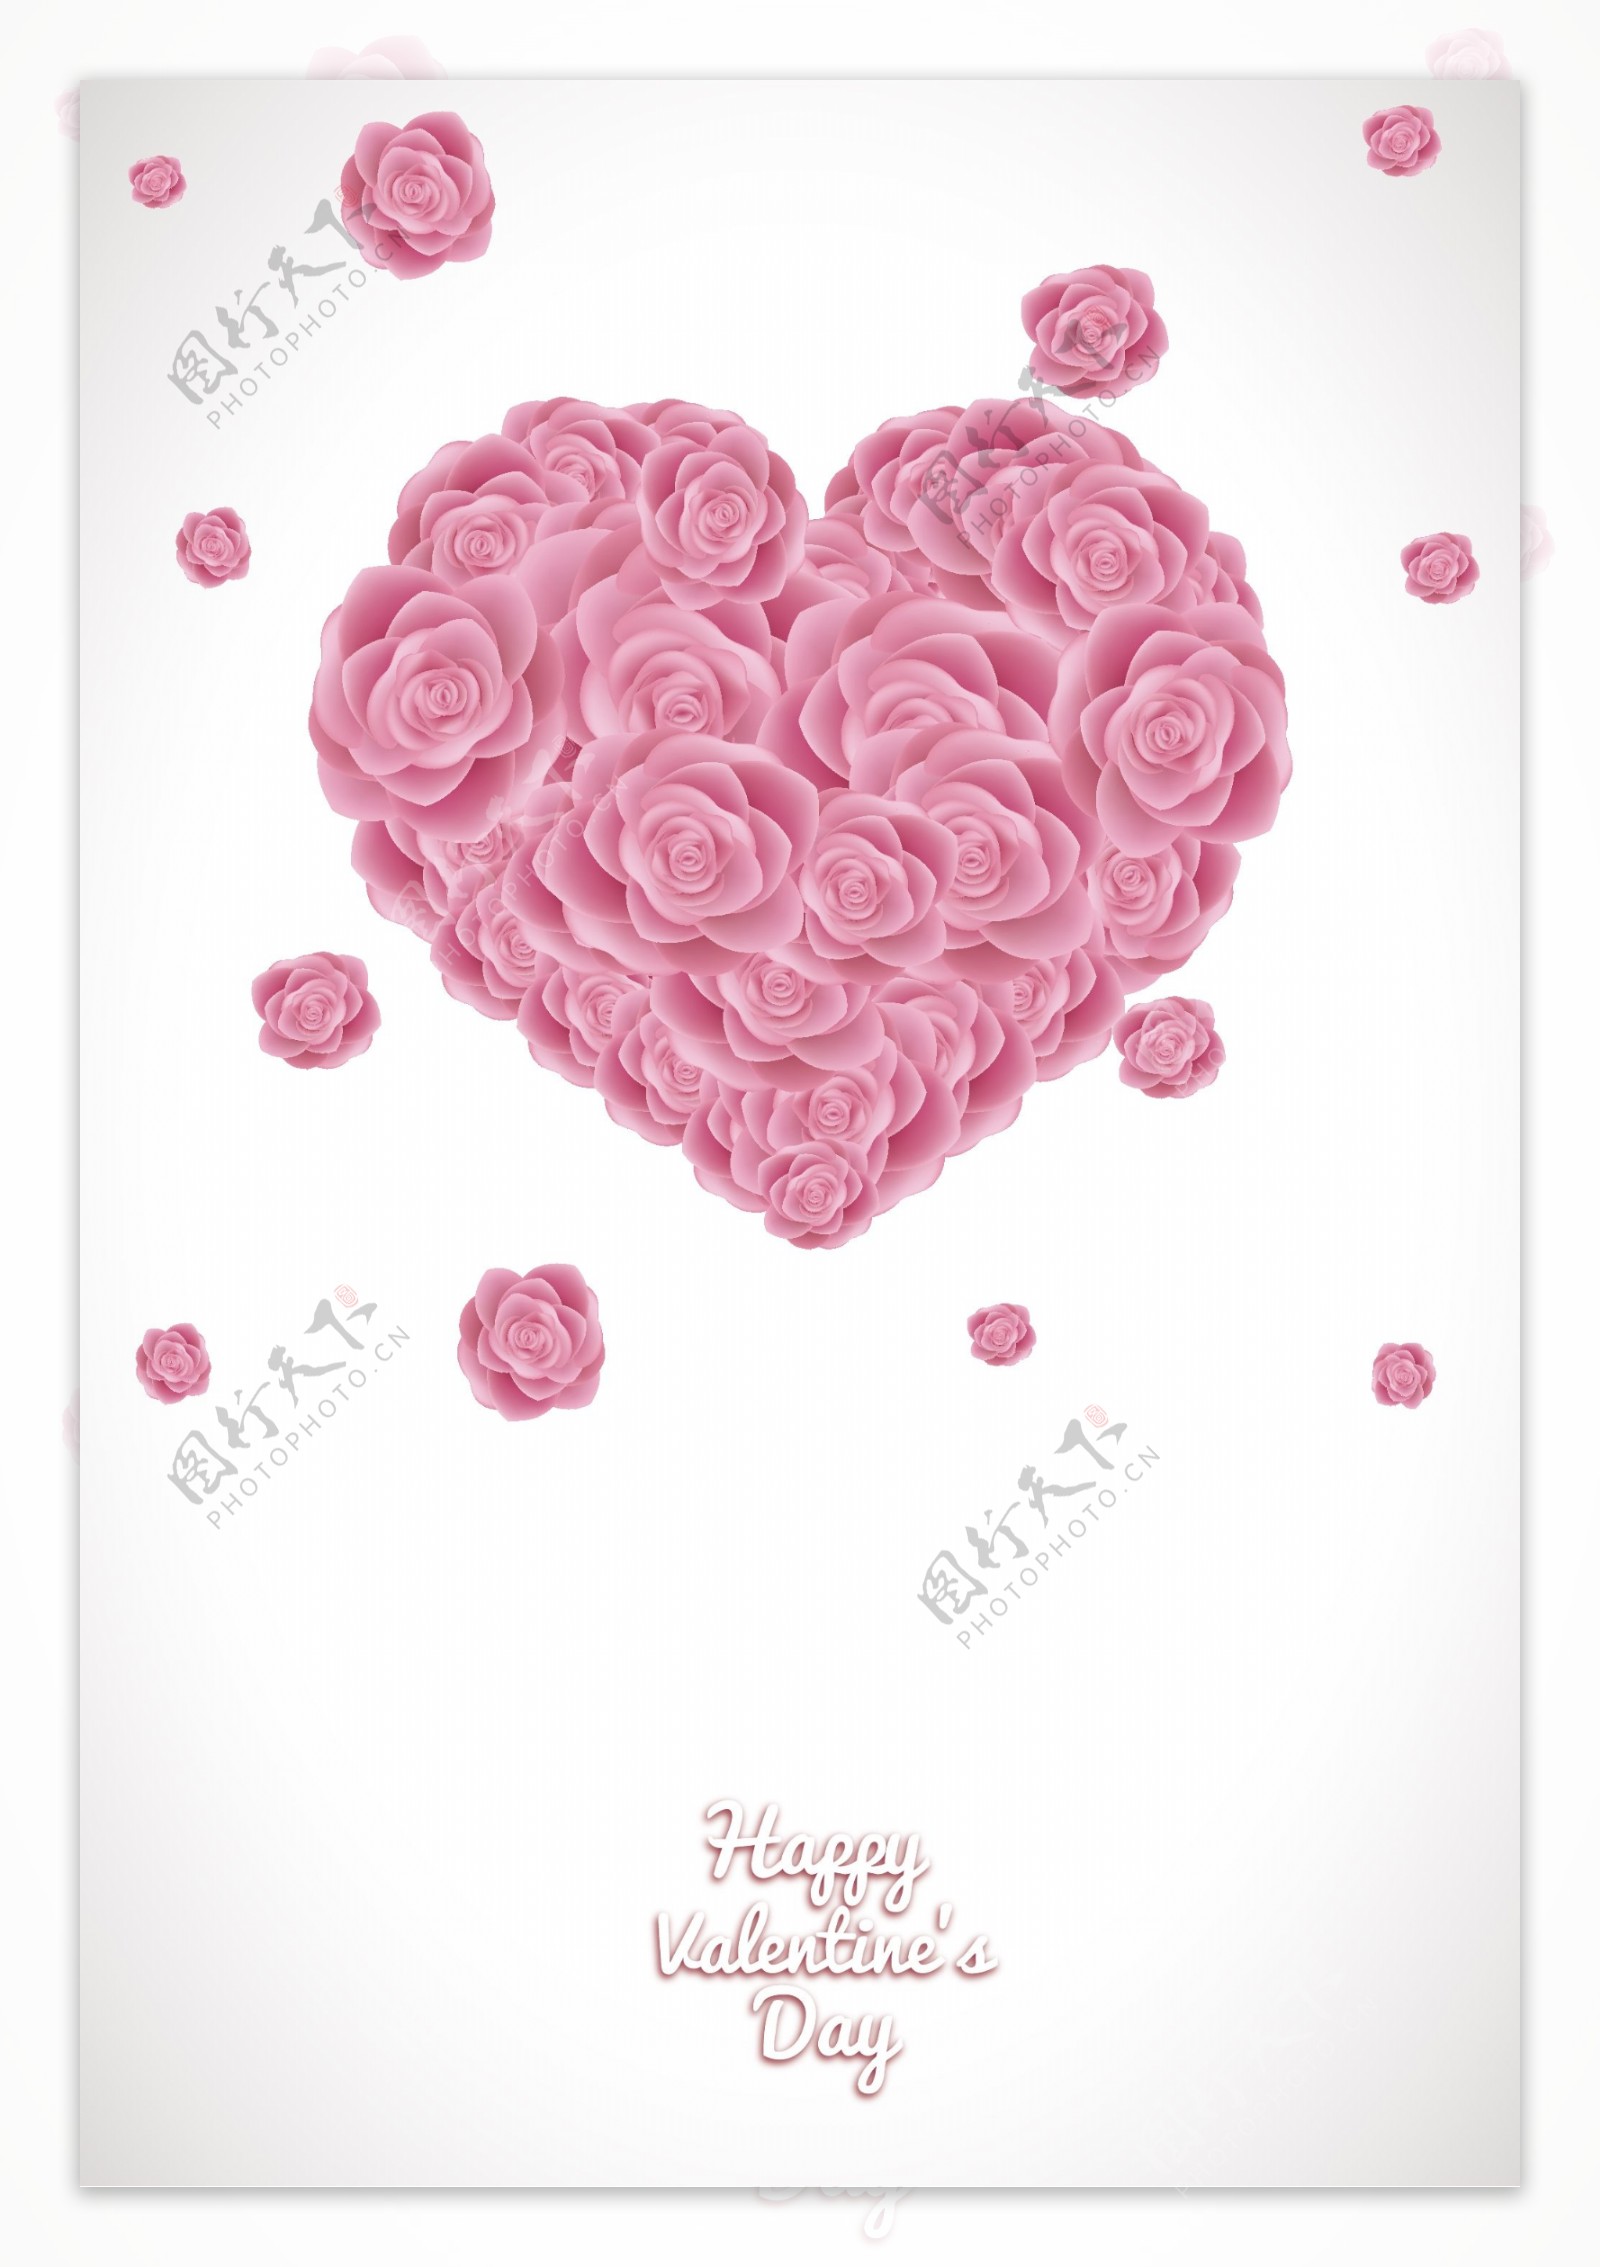 粉红色爱心玫瑰花情人节海报背景素材